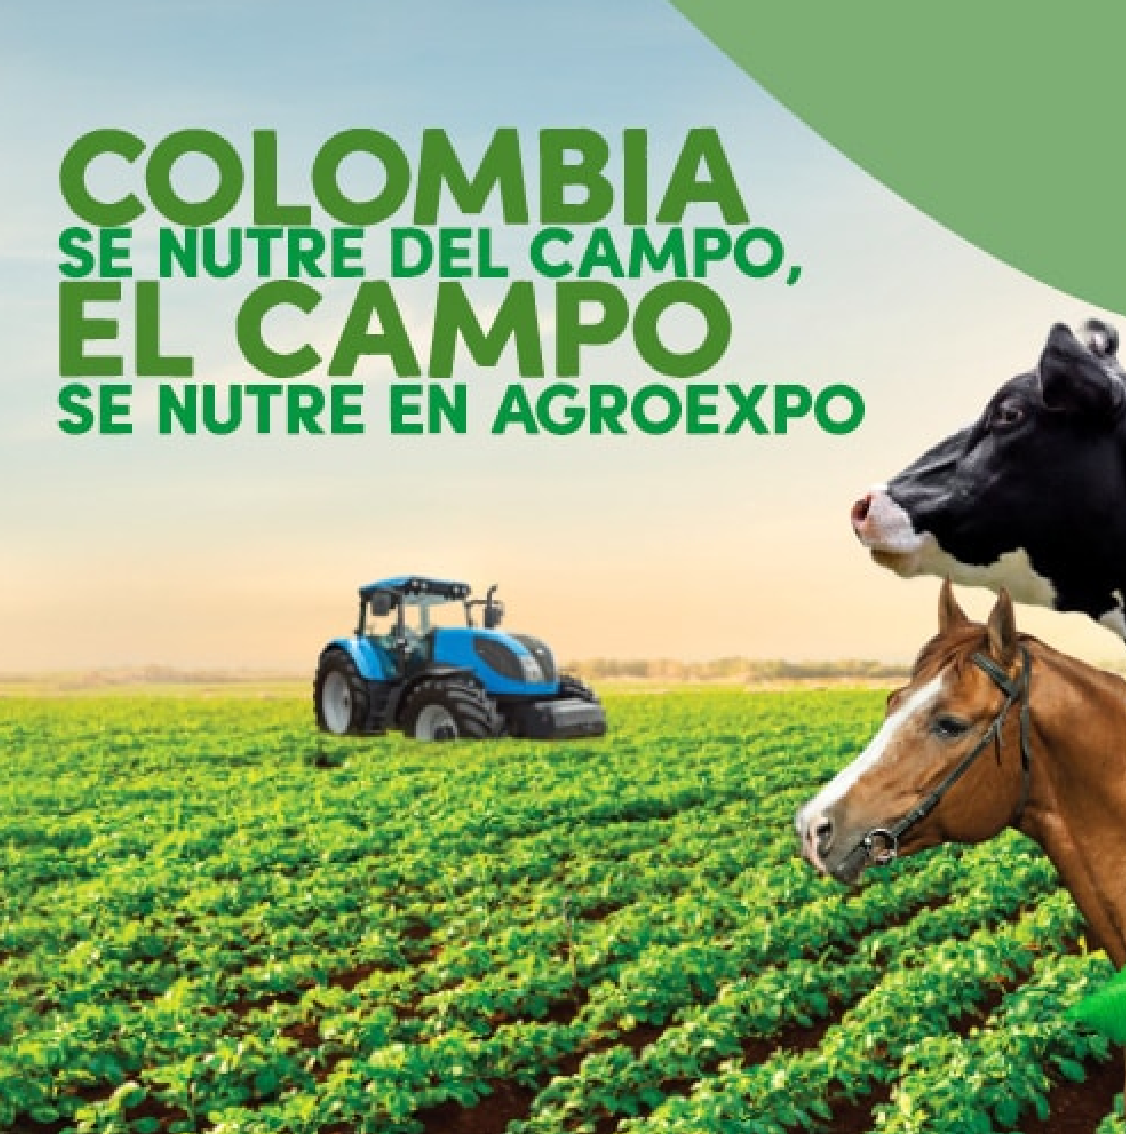 Agroexpo se celebrará del 27 al 30 de enero de 2021